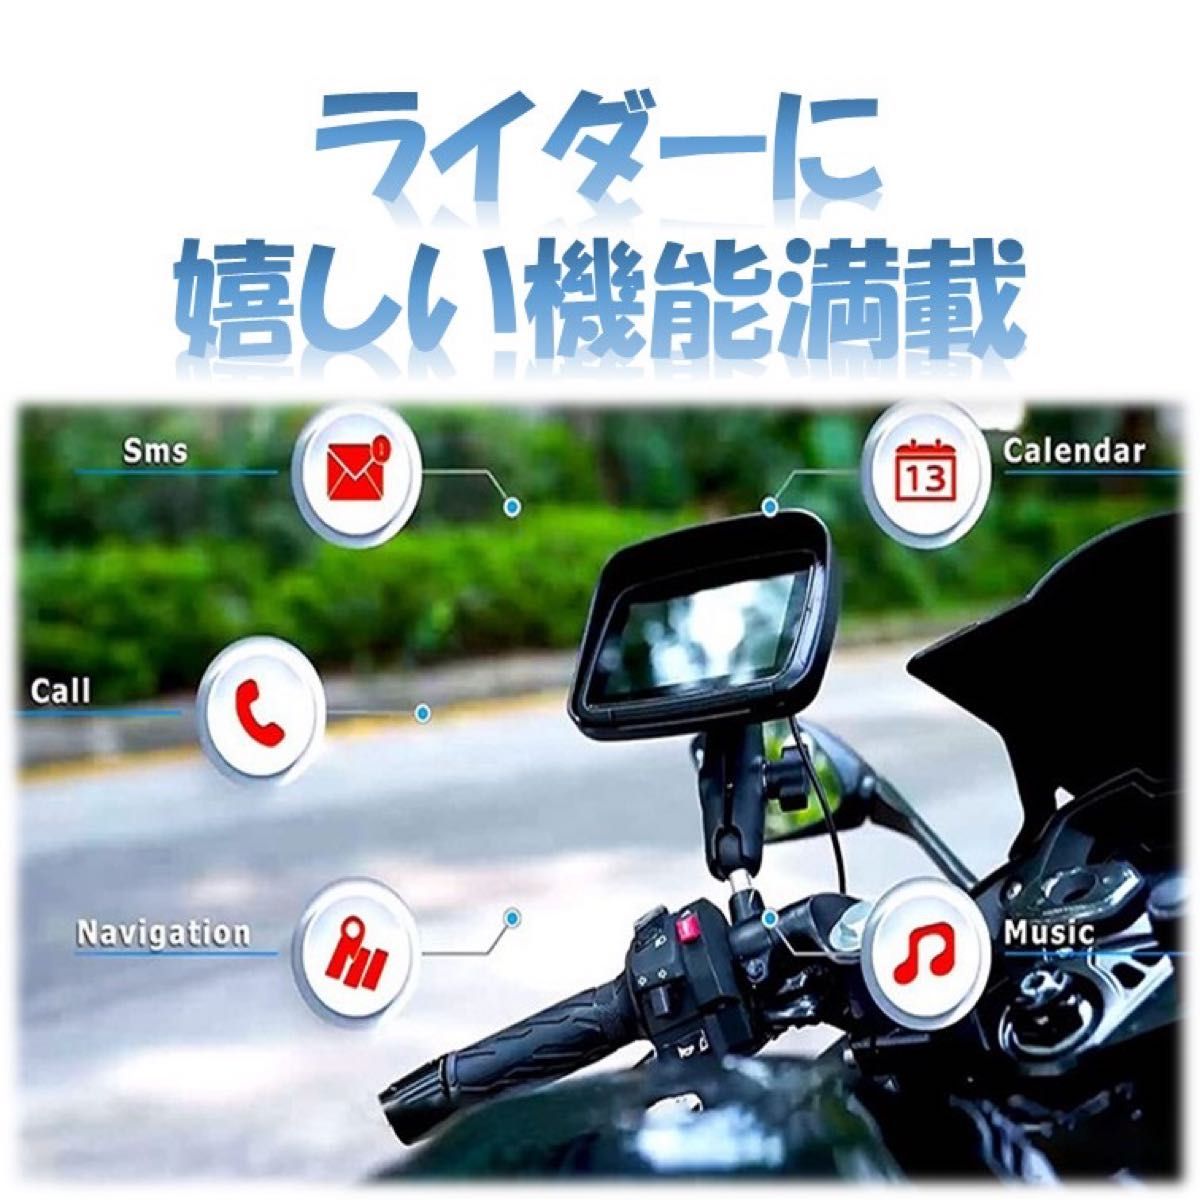 バイク用ナビ 5インチ CarPlay Android Auto カープレイ アンドロイドオート iPhone 防水 バイク ナビ